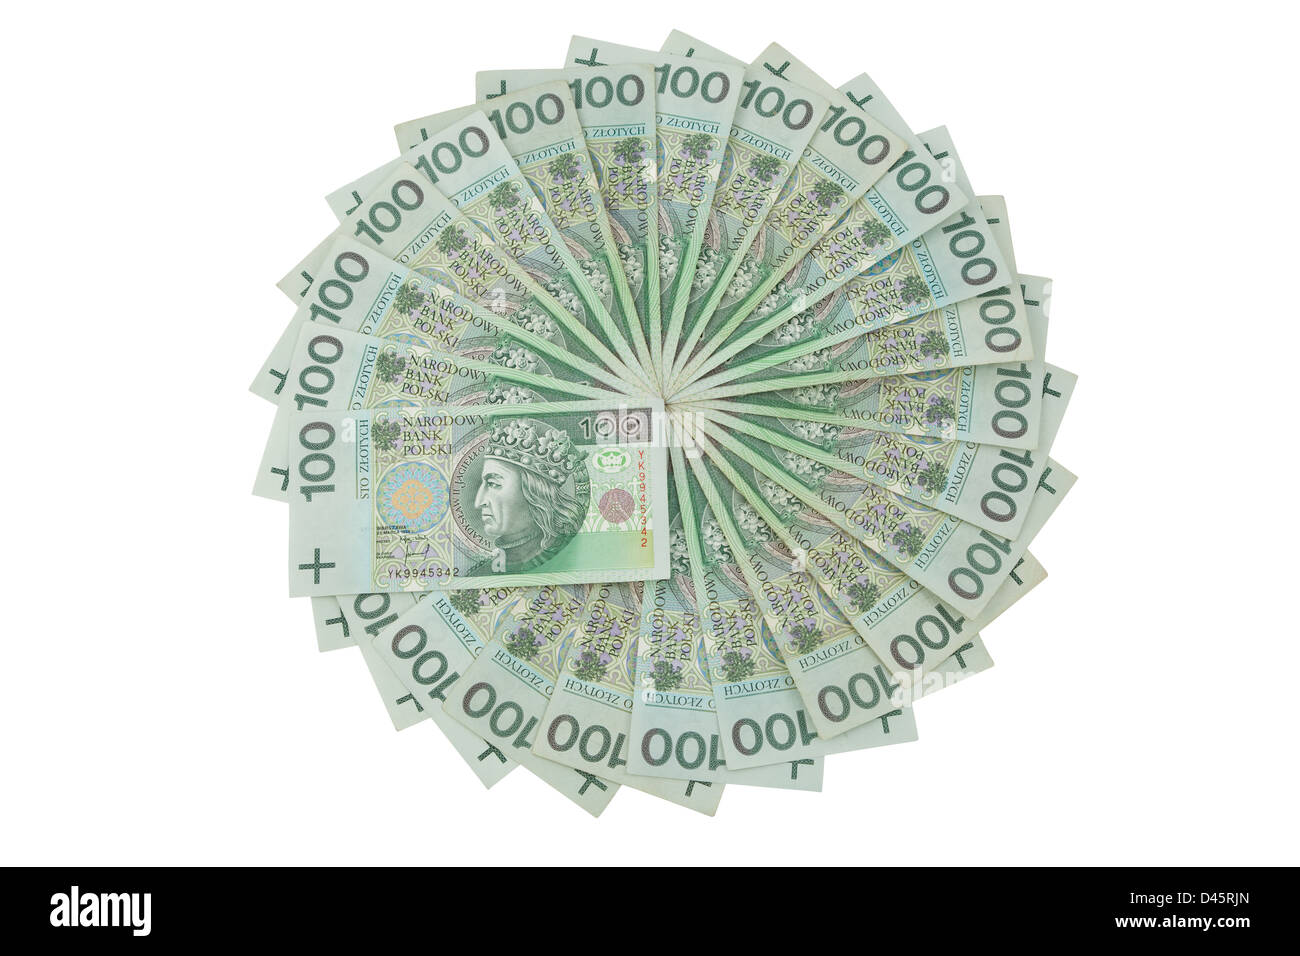 Polen-Währung in Form Kreis auf weißem Hintergrund Stockfoto